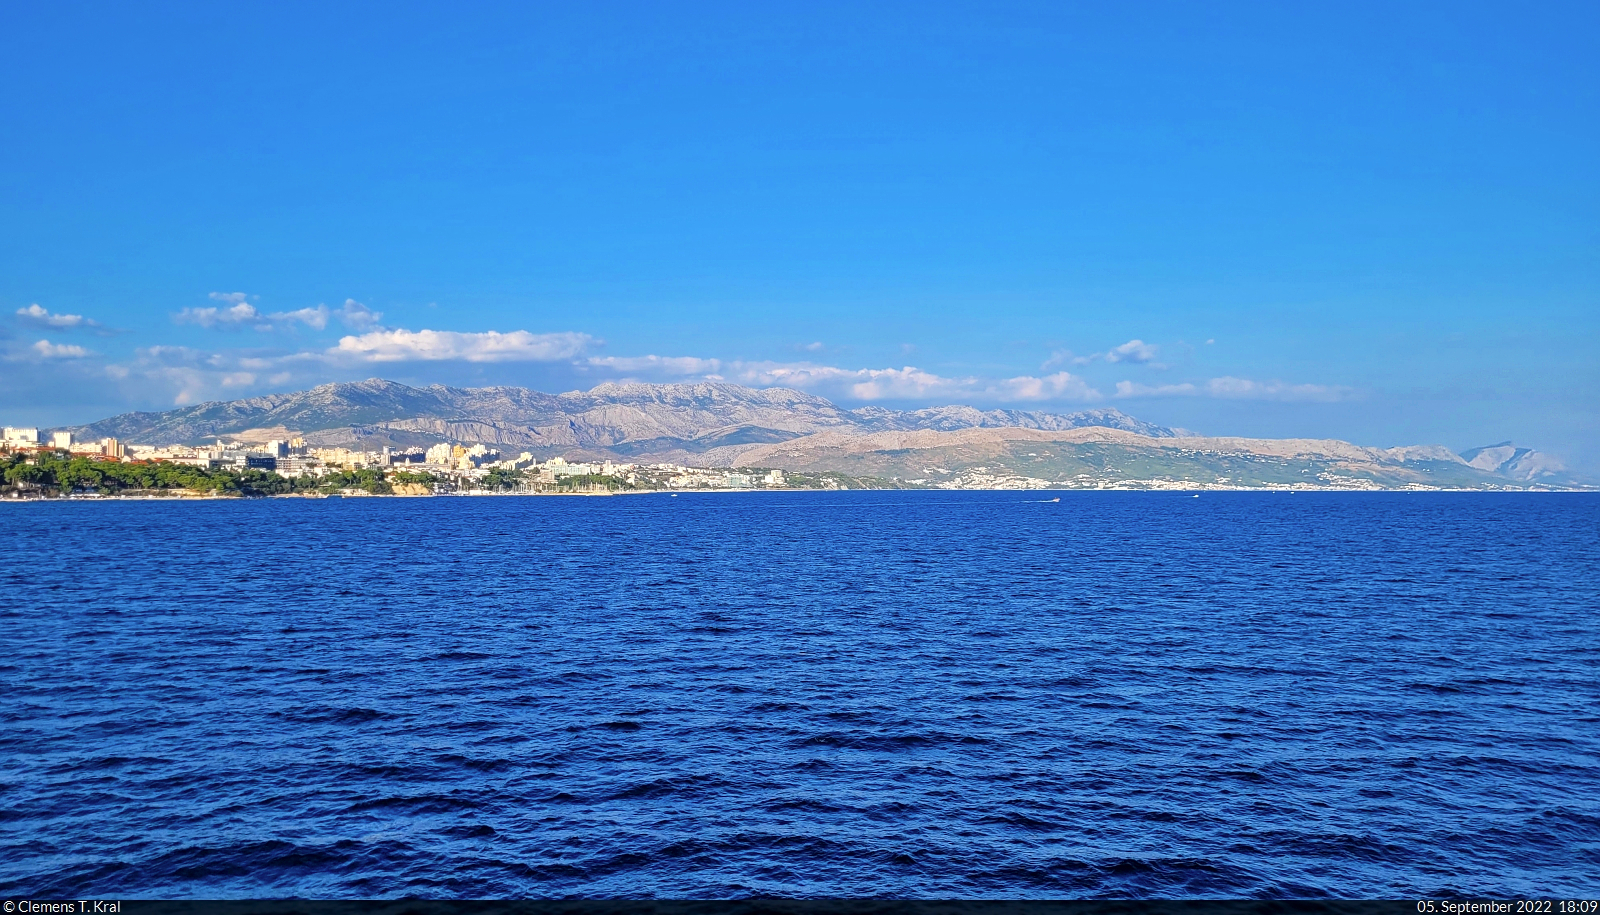 Die Fährfahrt auf die Adria-Insel Brač nach Supetar (HR) bietet Aussicht auf das Mosor-Gebirge, das sich nordöstlich von Split erstreckt.

🕓 5.9.2022 | 18:09 Uhr